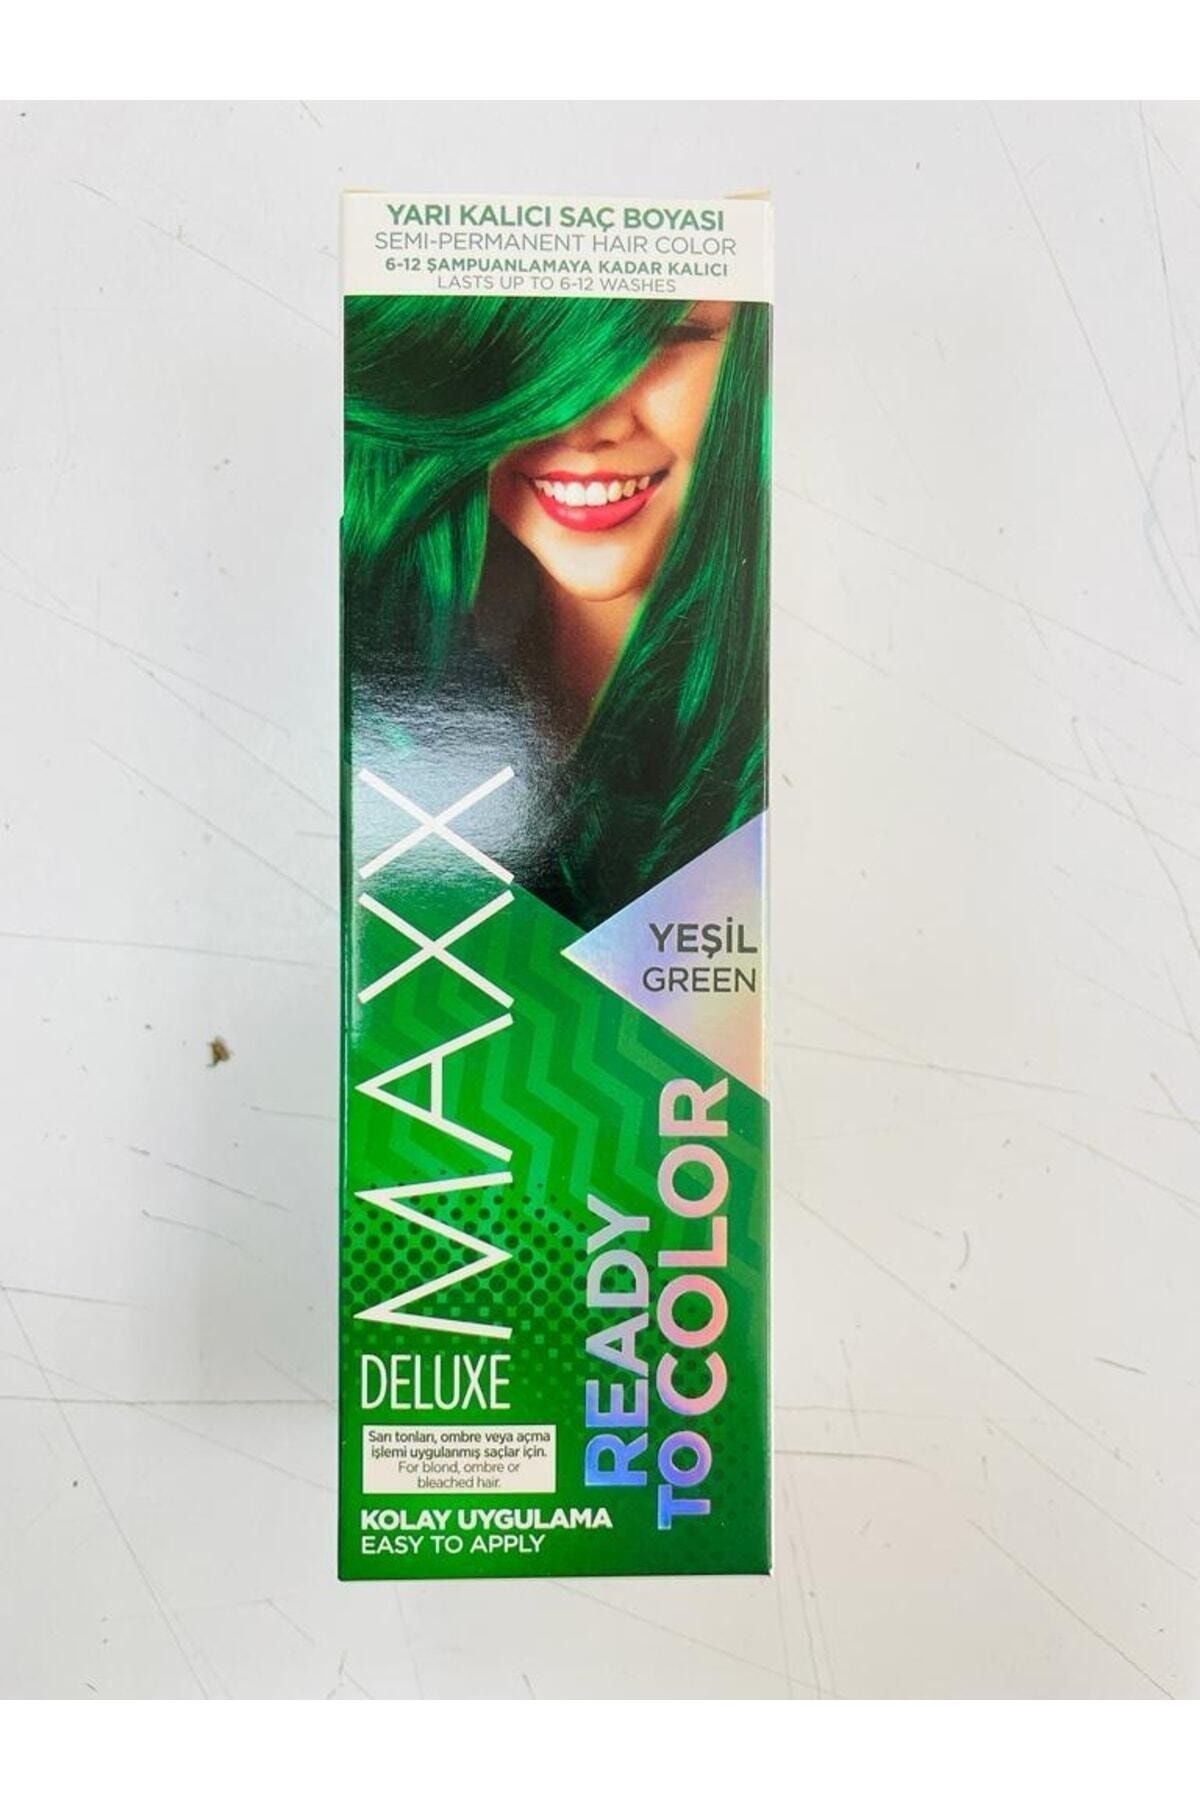 MAXX DELUXE Yarı Kalıcı Saç Boyası Yeşil Green Ready To Color G-k Hair Center